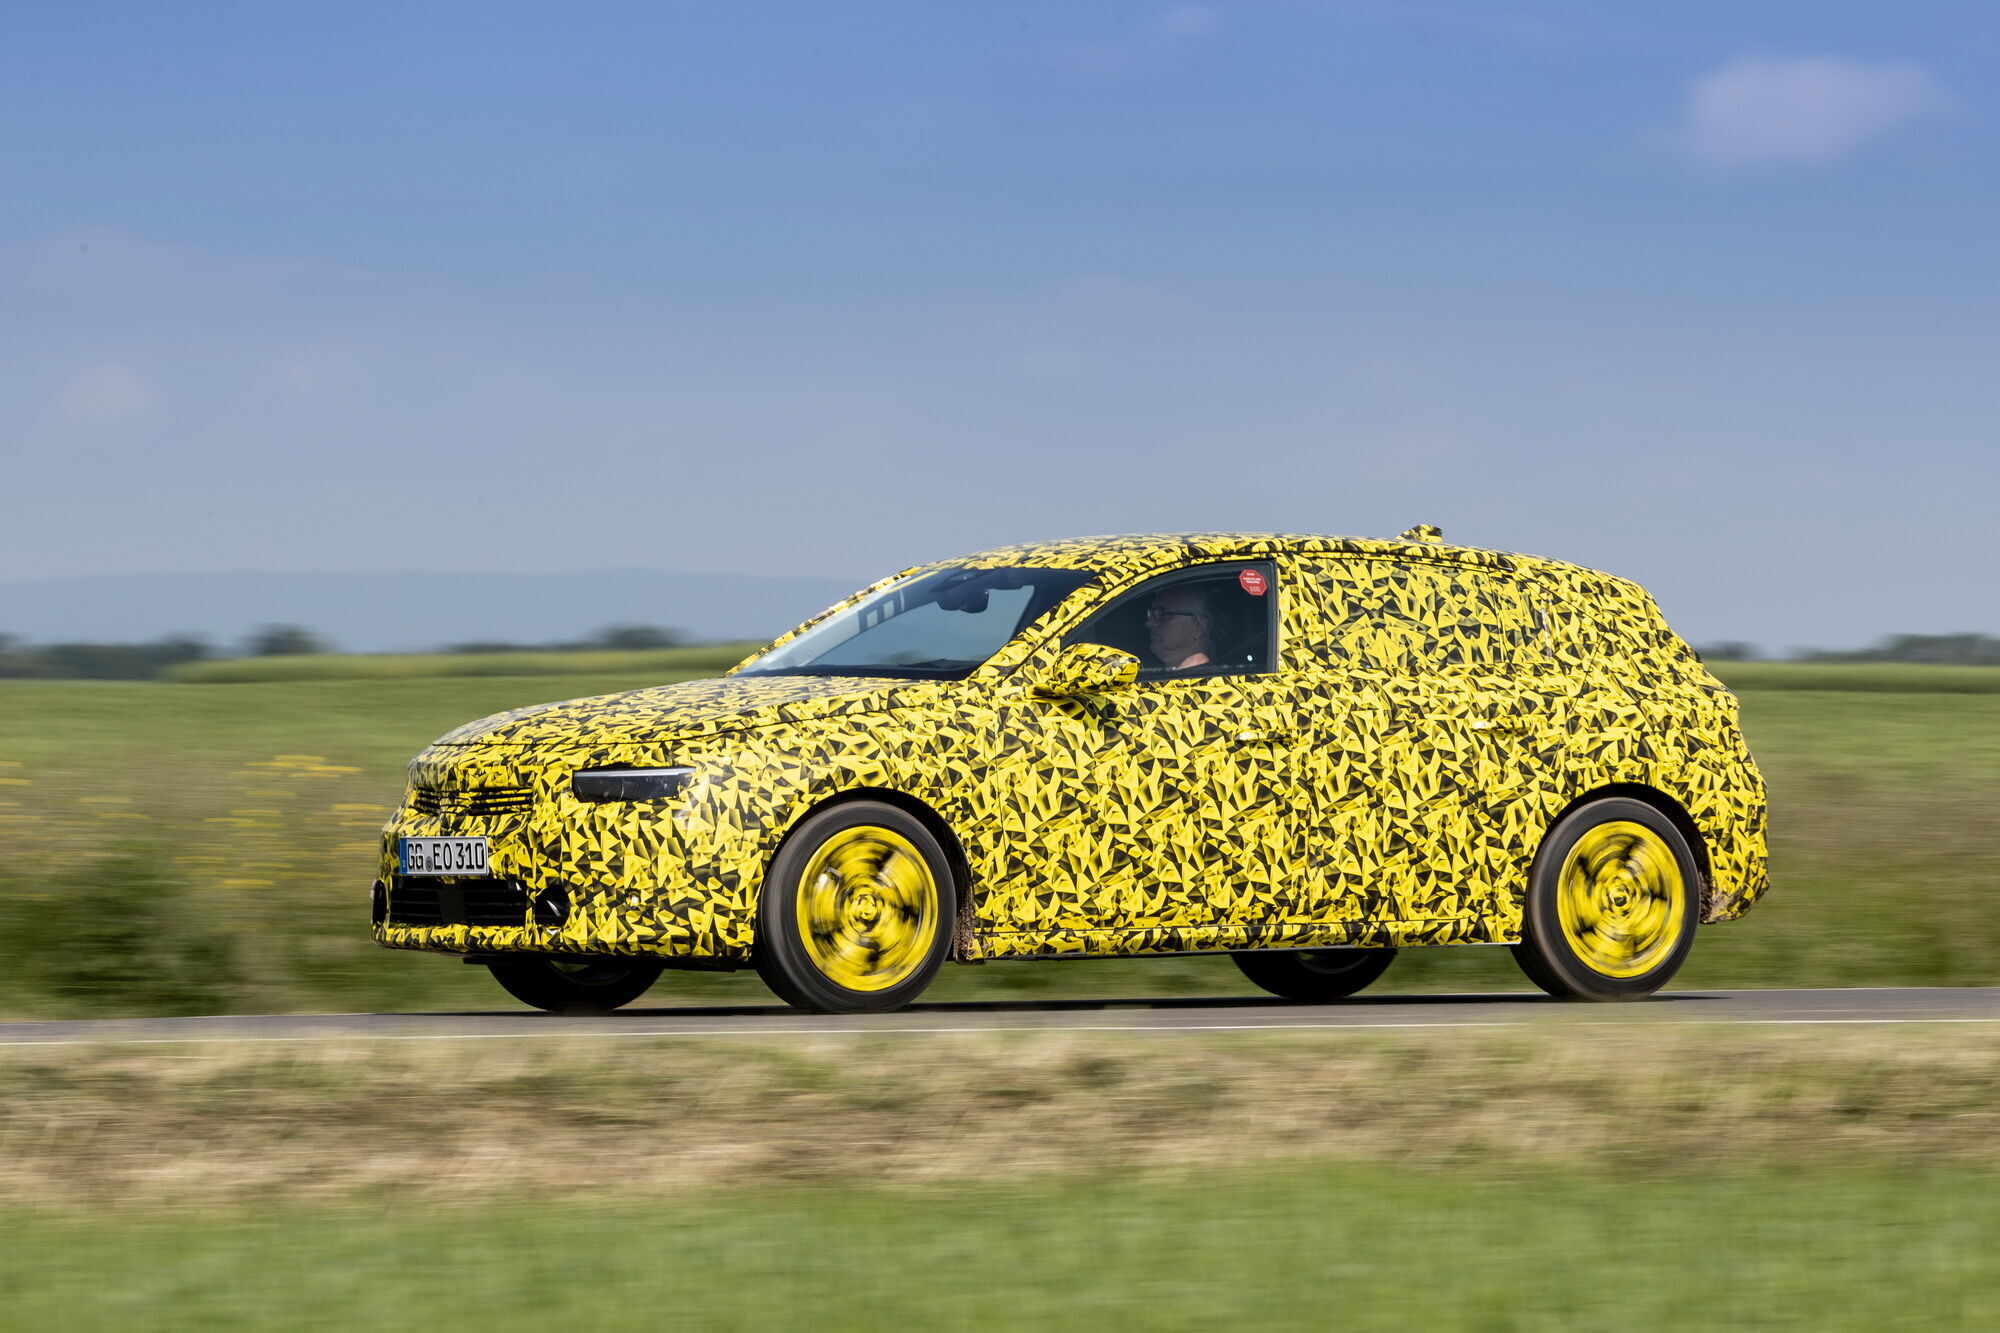 Внешне автомобиль будет продолжать развитие нового стиля Opel Vizor, который уже успели примерить другие новинки бренда